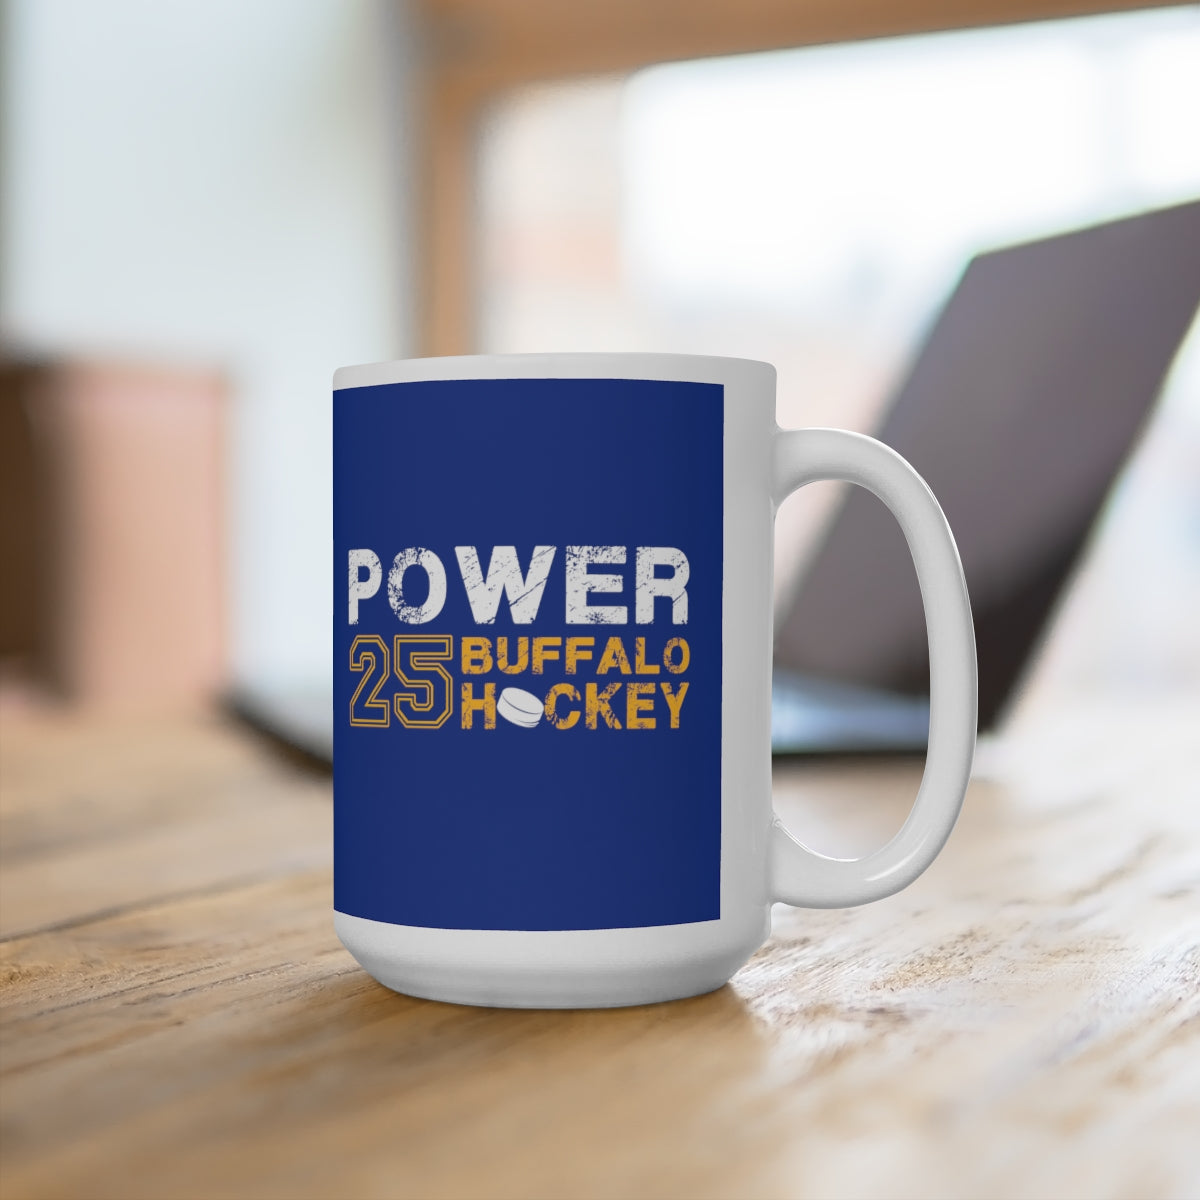 Power 25 Buffalo Hockey Ceramic Coffee Mug In Royal Blue, 15oz